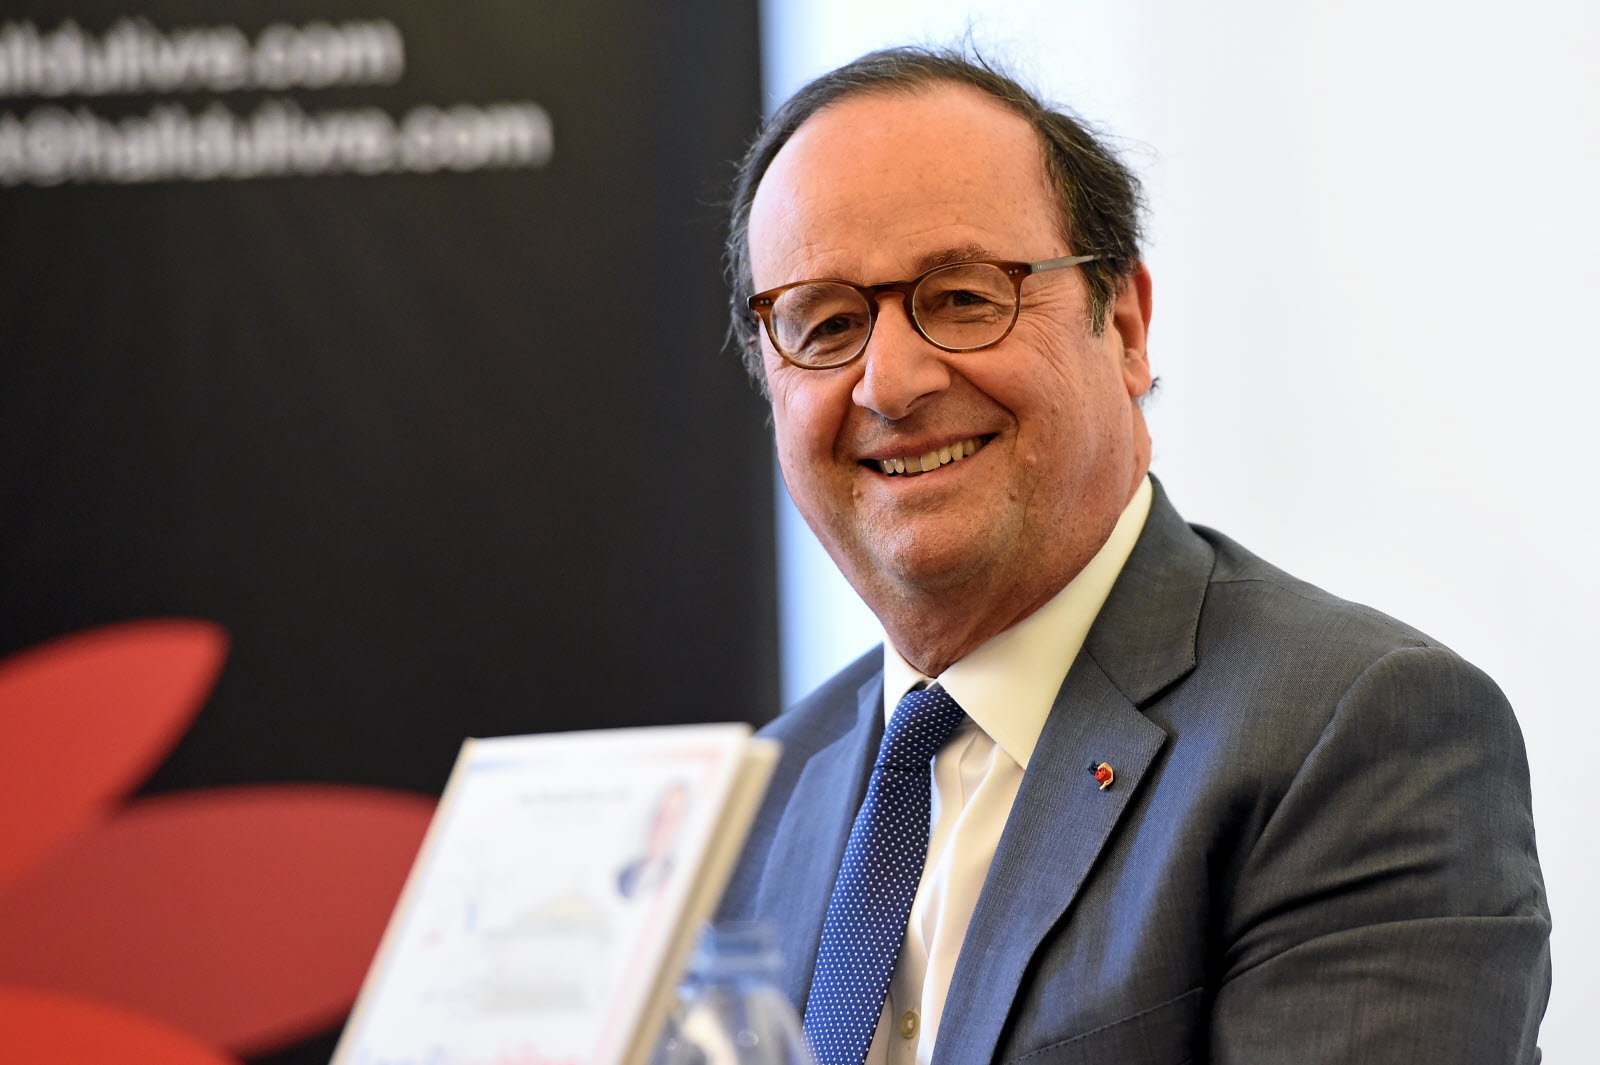 François Hollande fan de Booba ? Son incroyable révélation lors d’une interview